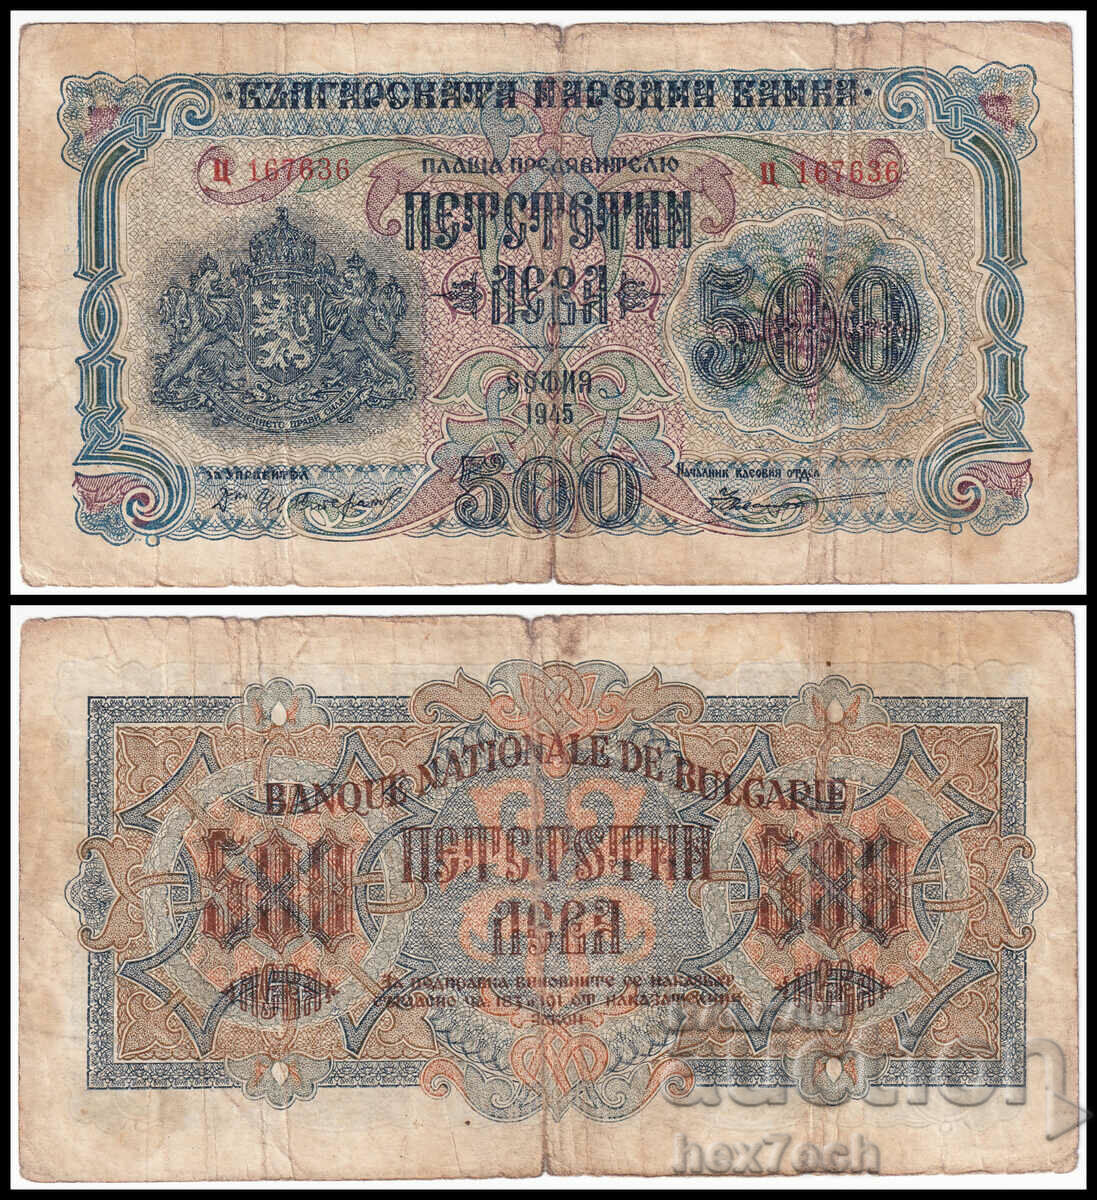 ❤️ ⭐ България 1945 500 лева 1 буква ⭐ ❤️